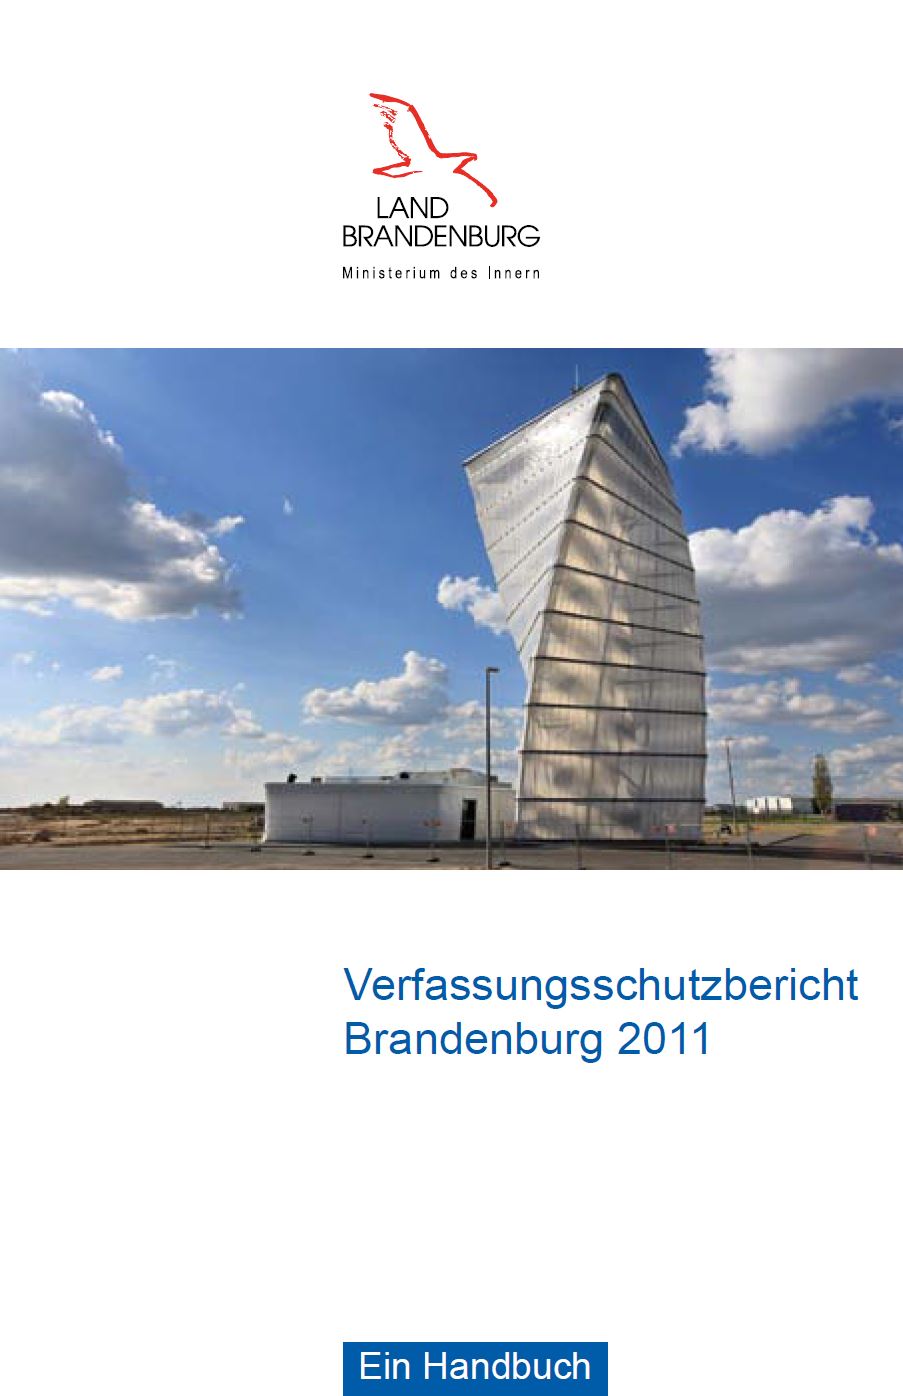 Bild vergrößern (Bild: Titelseite Verfassungsschutzbericht 2011)